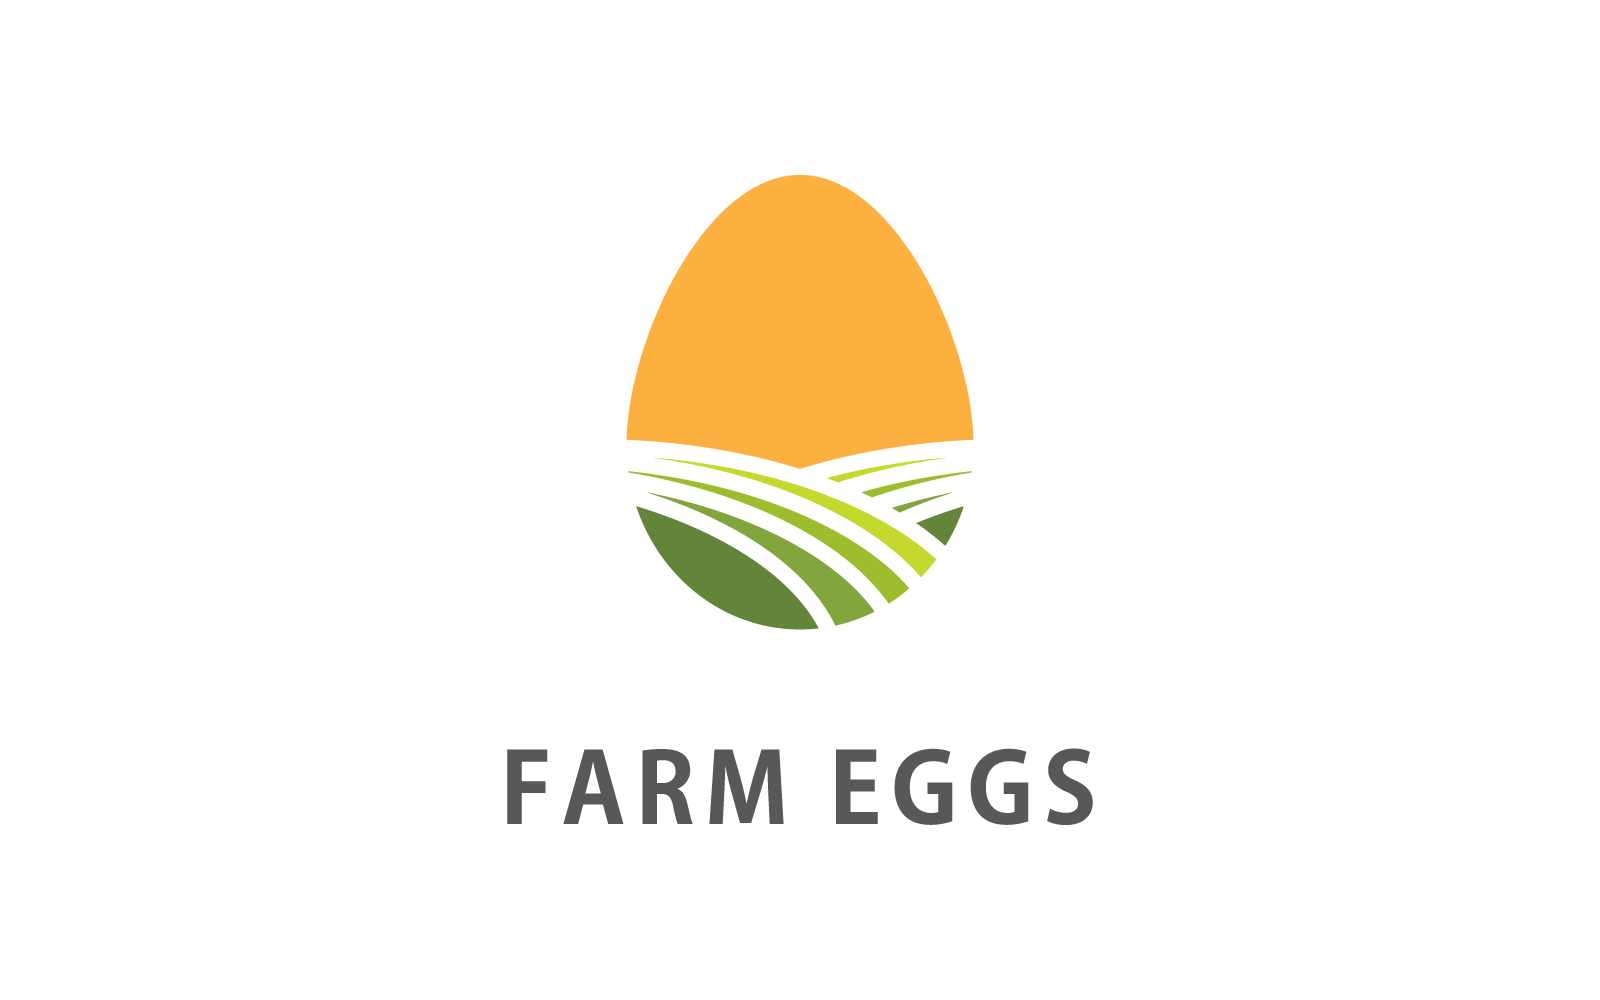 Diseño plano del vector del logotipo de la ilustración del huevo de granja